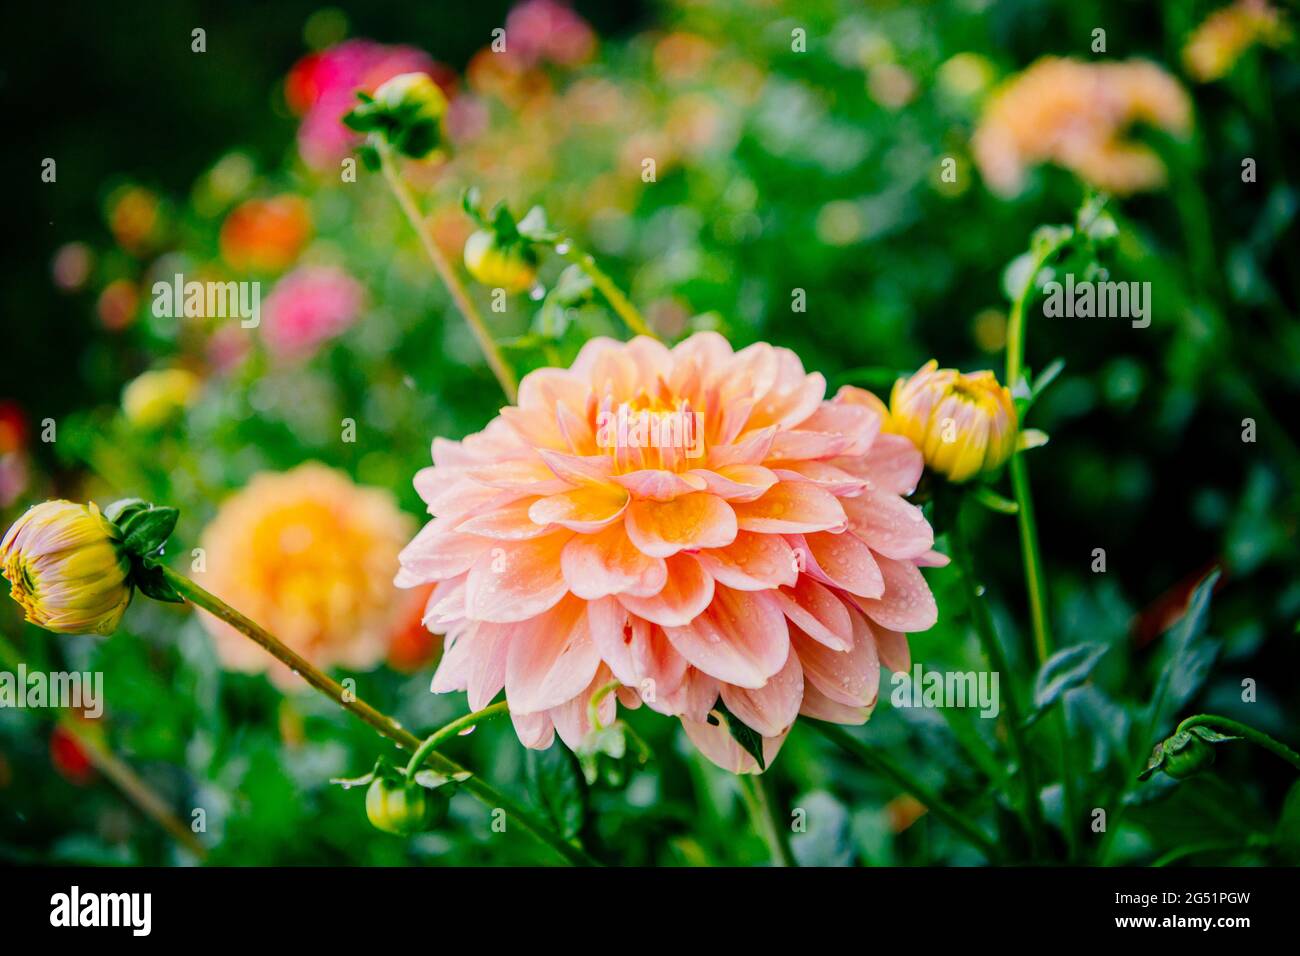 Close-up of orange flower Stock Photo